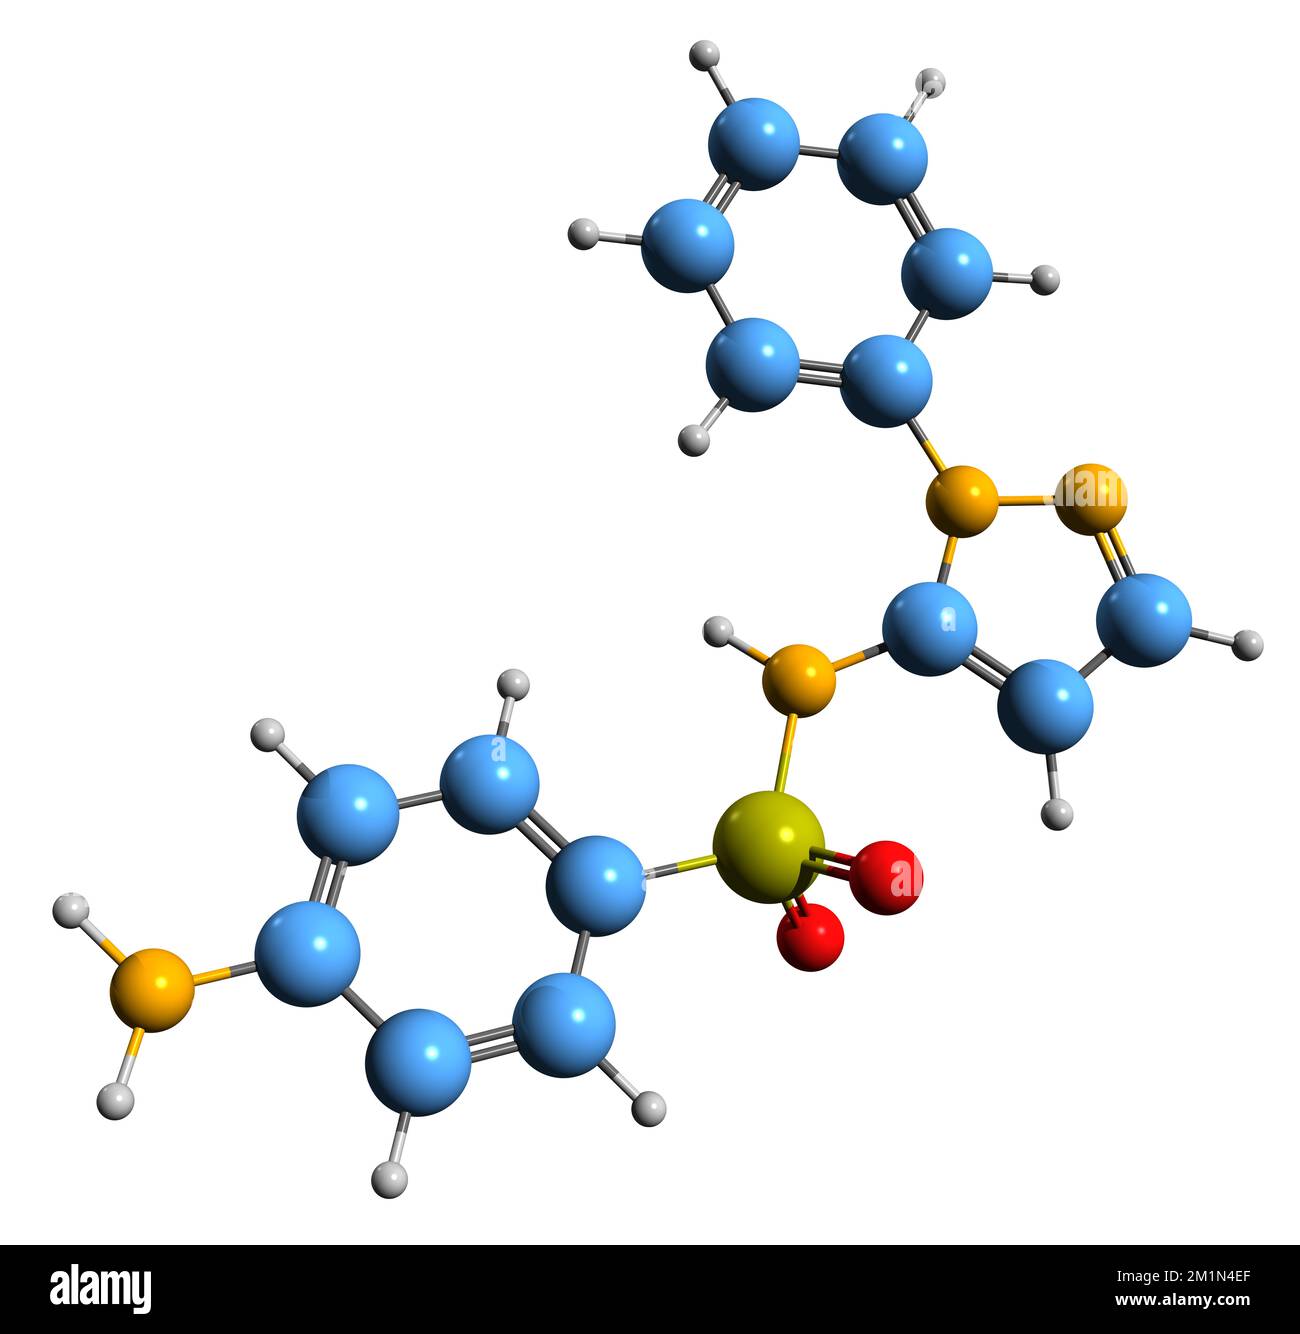 3D-Bild der Sulfaphenazol-Skelettformel - molekularchemische Struktur des auf weißem Hintergrund isolierten Sulfonamids Stockfoto